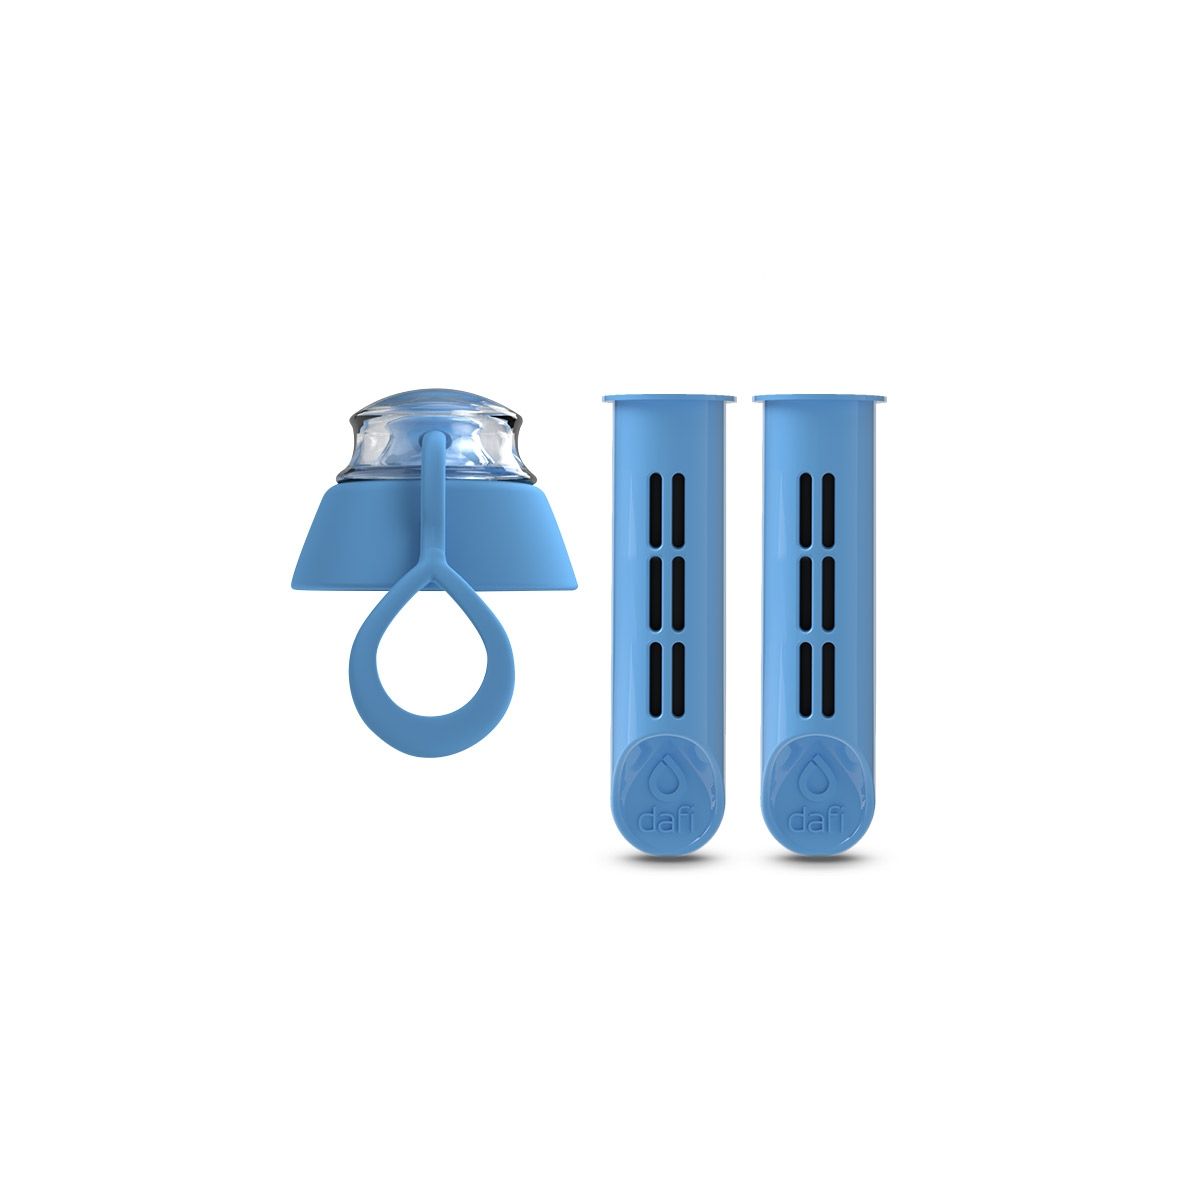 Náhradní filtr (2 ks) + víčko do filtrační láhve Dafi SOFT (modrá)